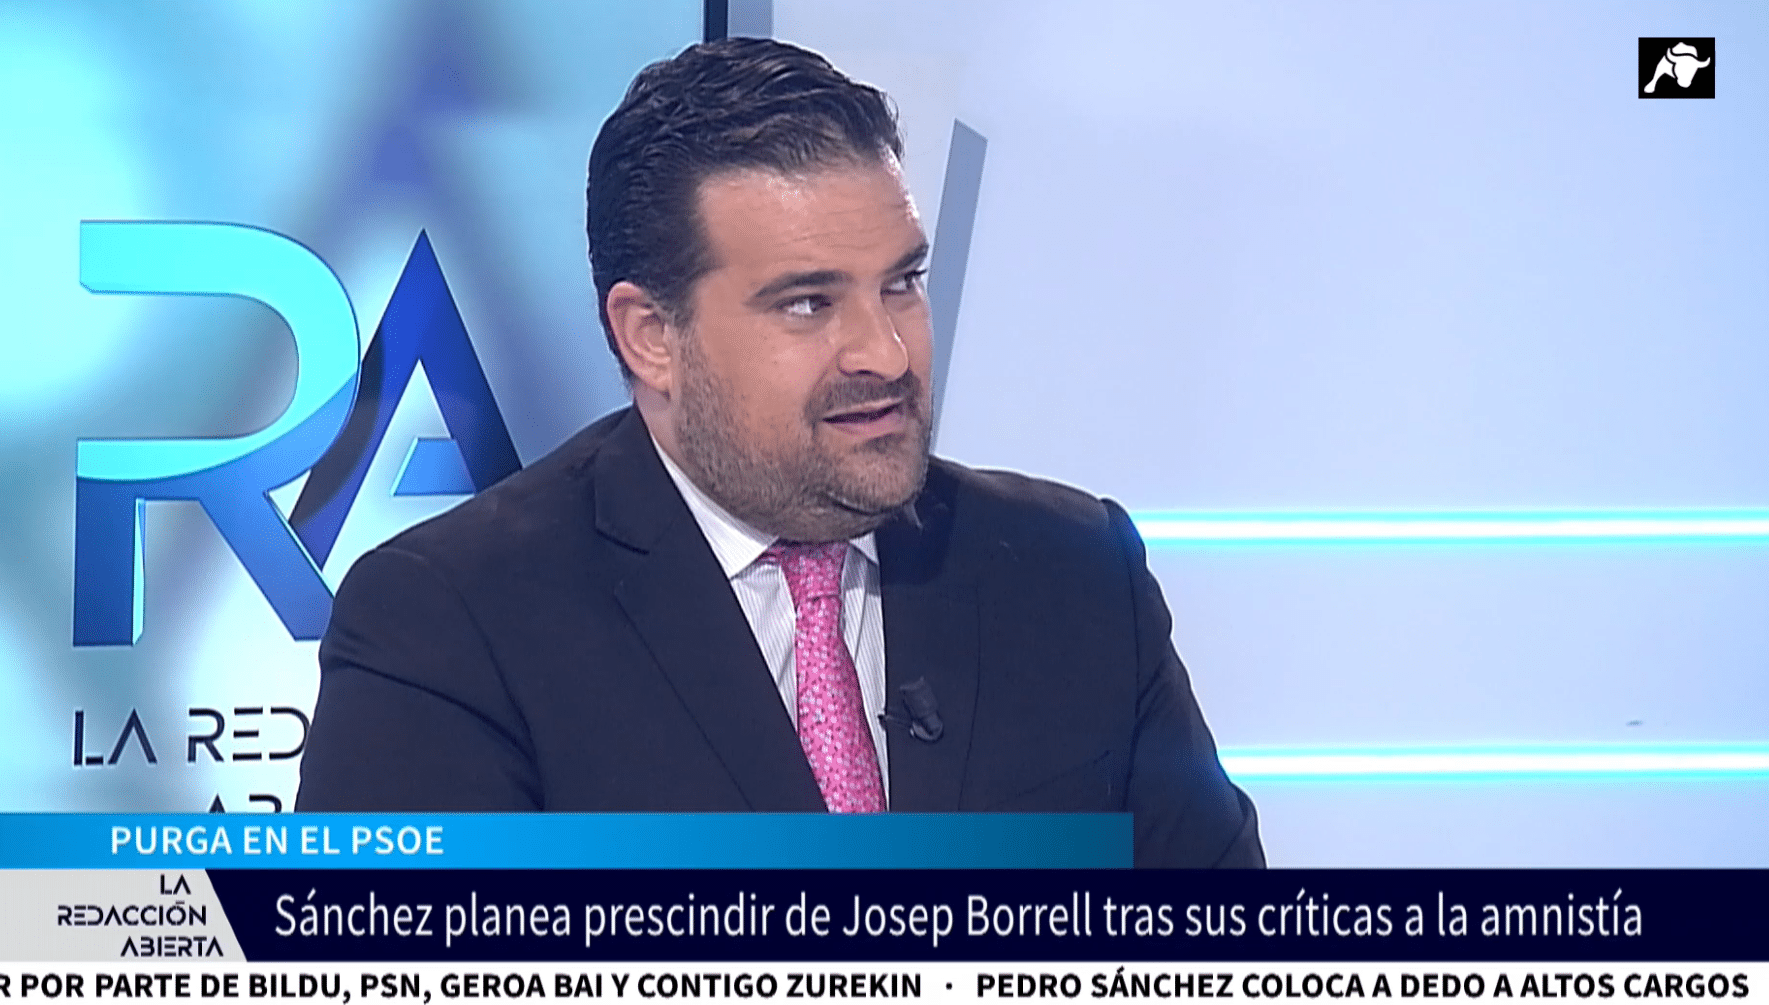 Pedro Sánchez planea prescindir de Josep Borrell por sus críticas a la amnistía